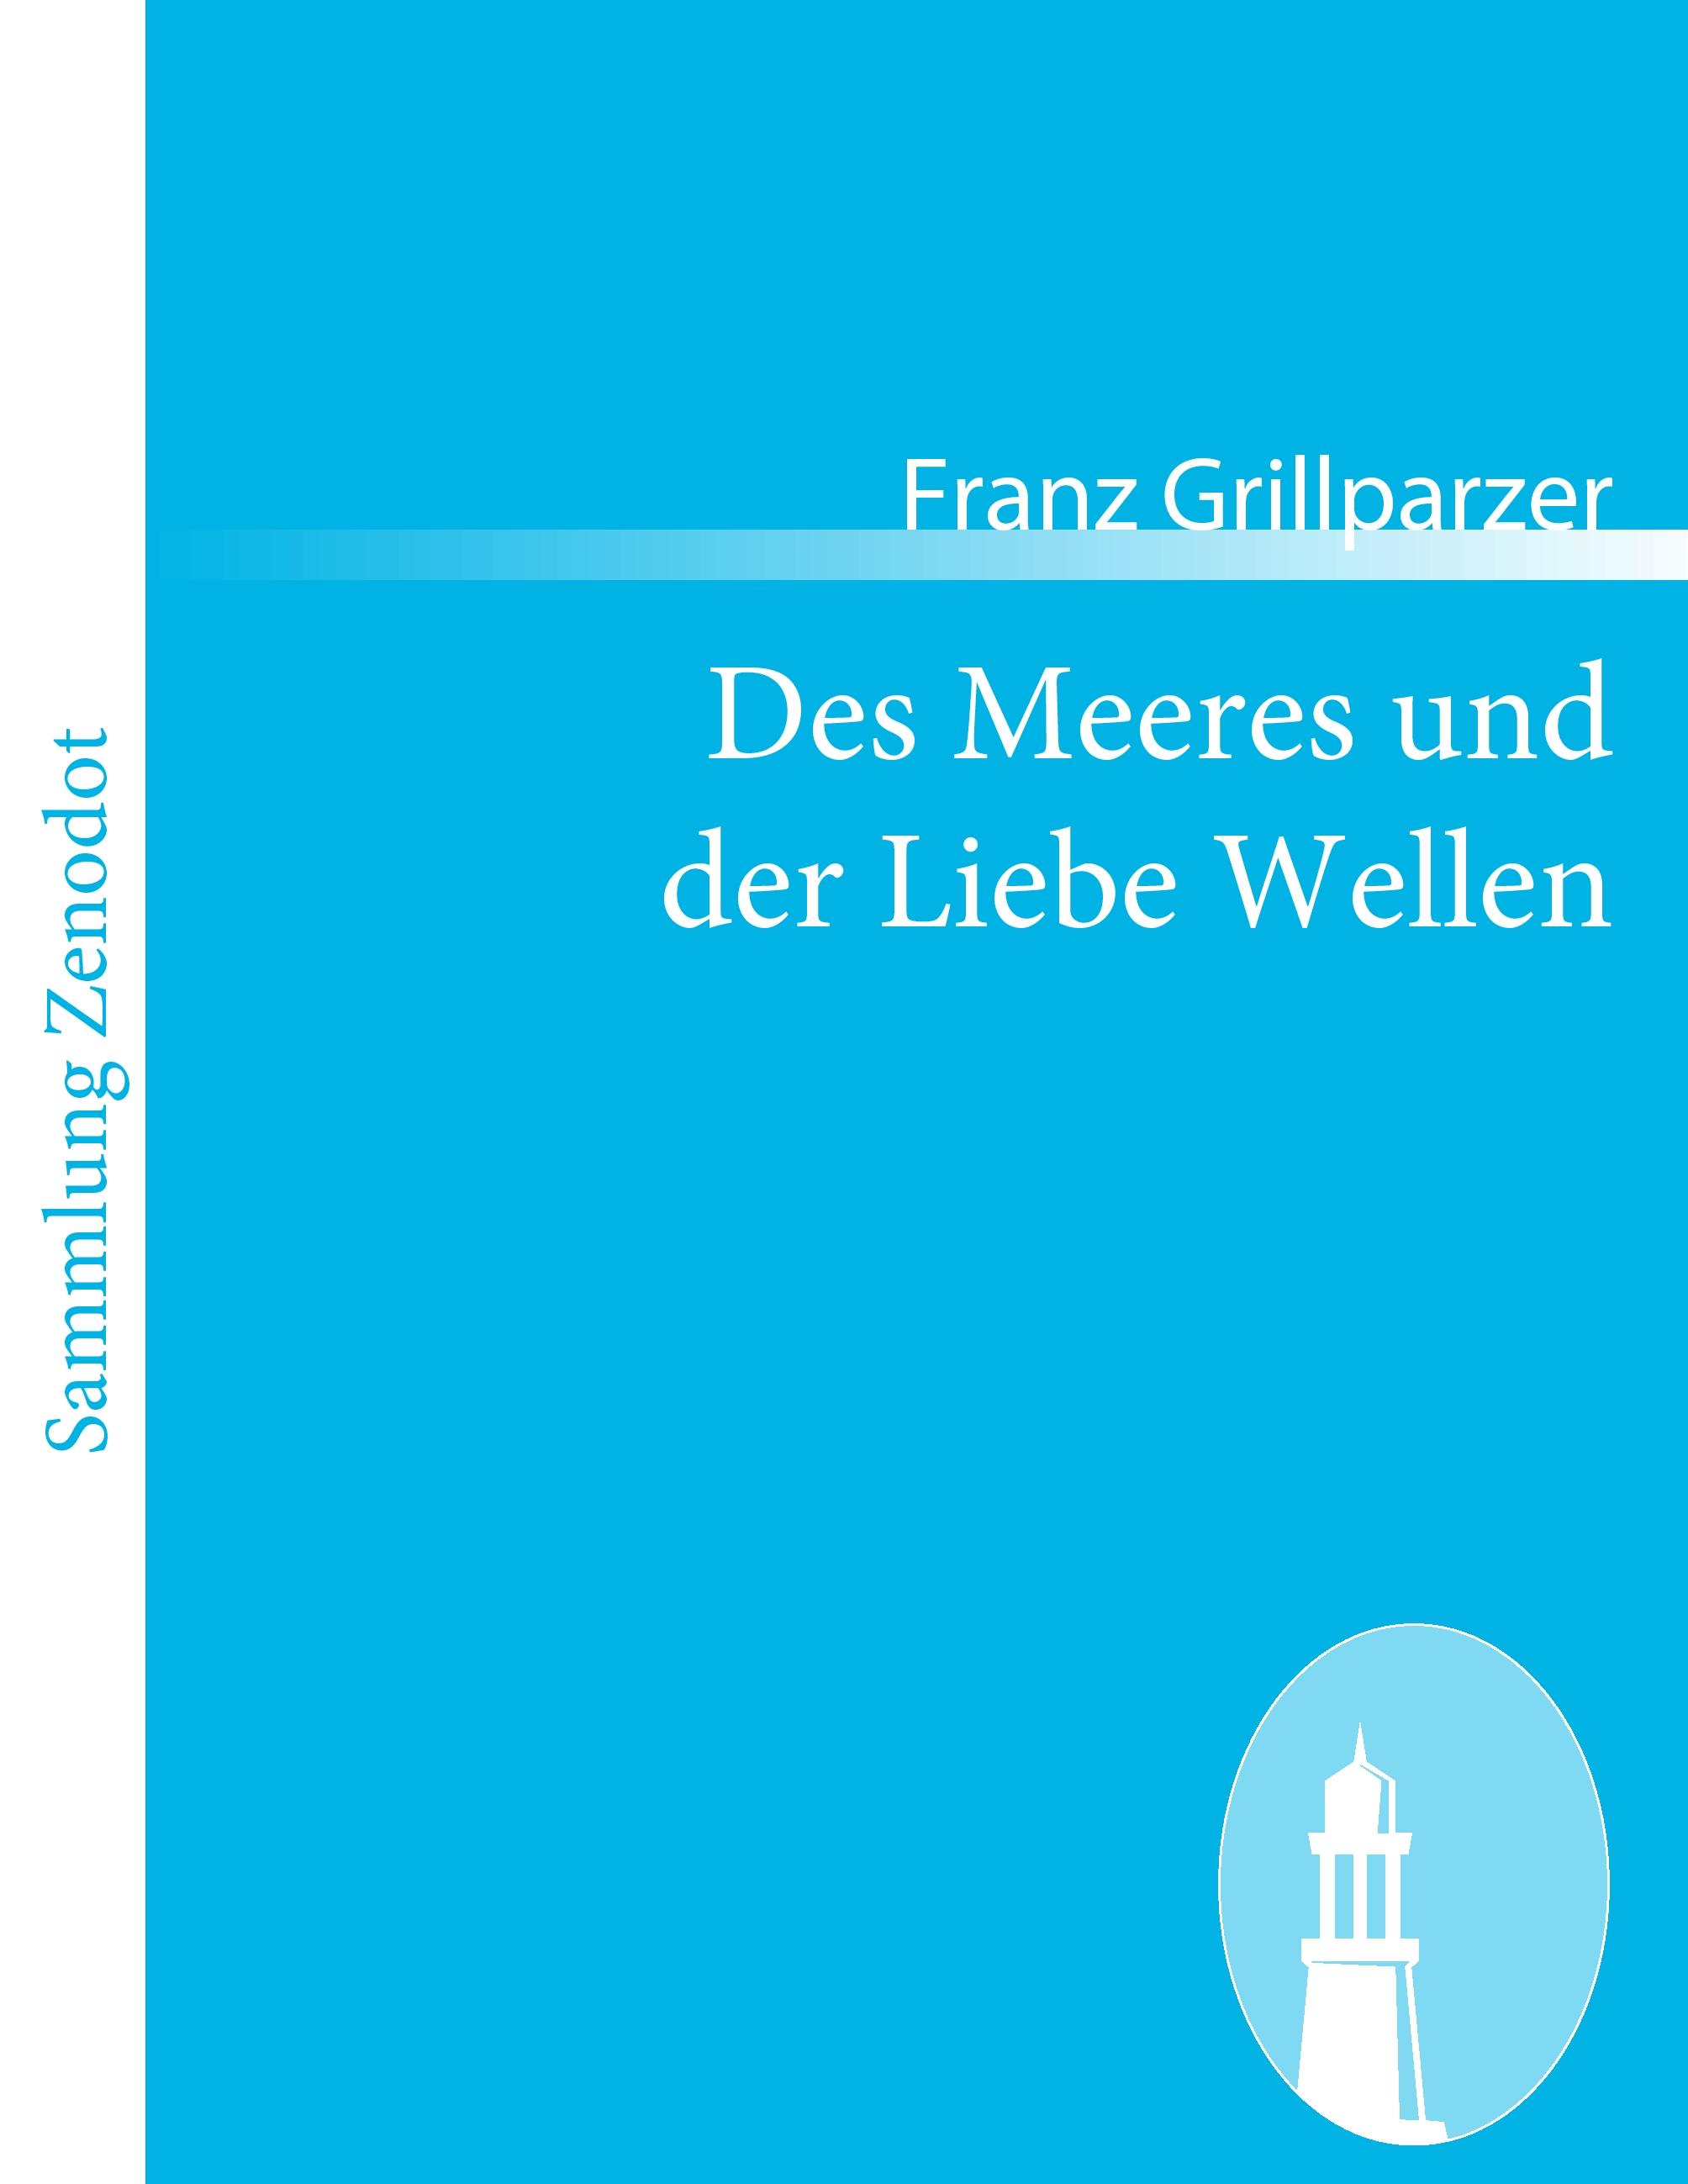 Des Meeres und der Liebe Wellen / Trauerspiel in fünf Aufzügen / Franz Grillparzer / Taschenbuch / Paperback / 116 S. / Deutsch / 2010 / Contumax / EAN 9783843054195 - Grillparzer, Franz